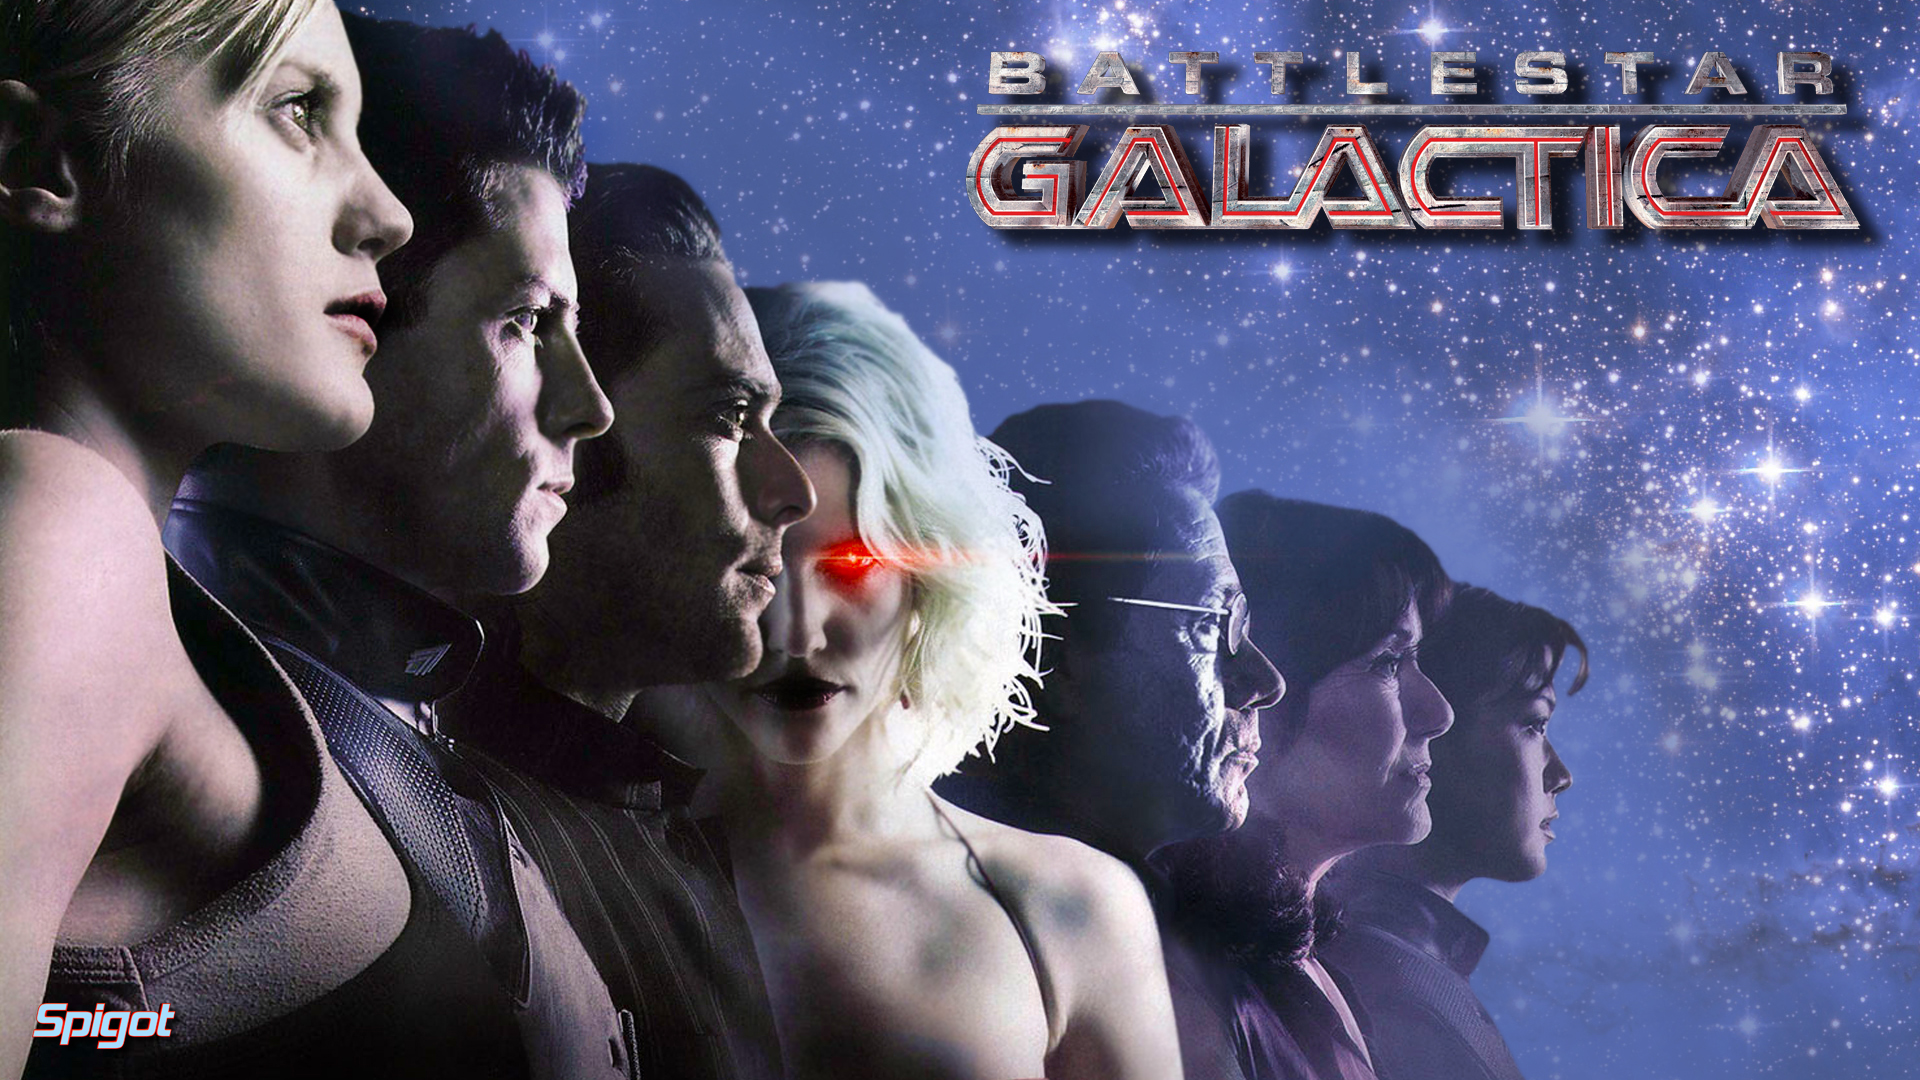 Battlestar galactica wallpaper george spigots blog